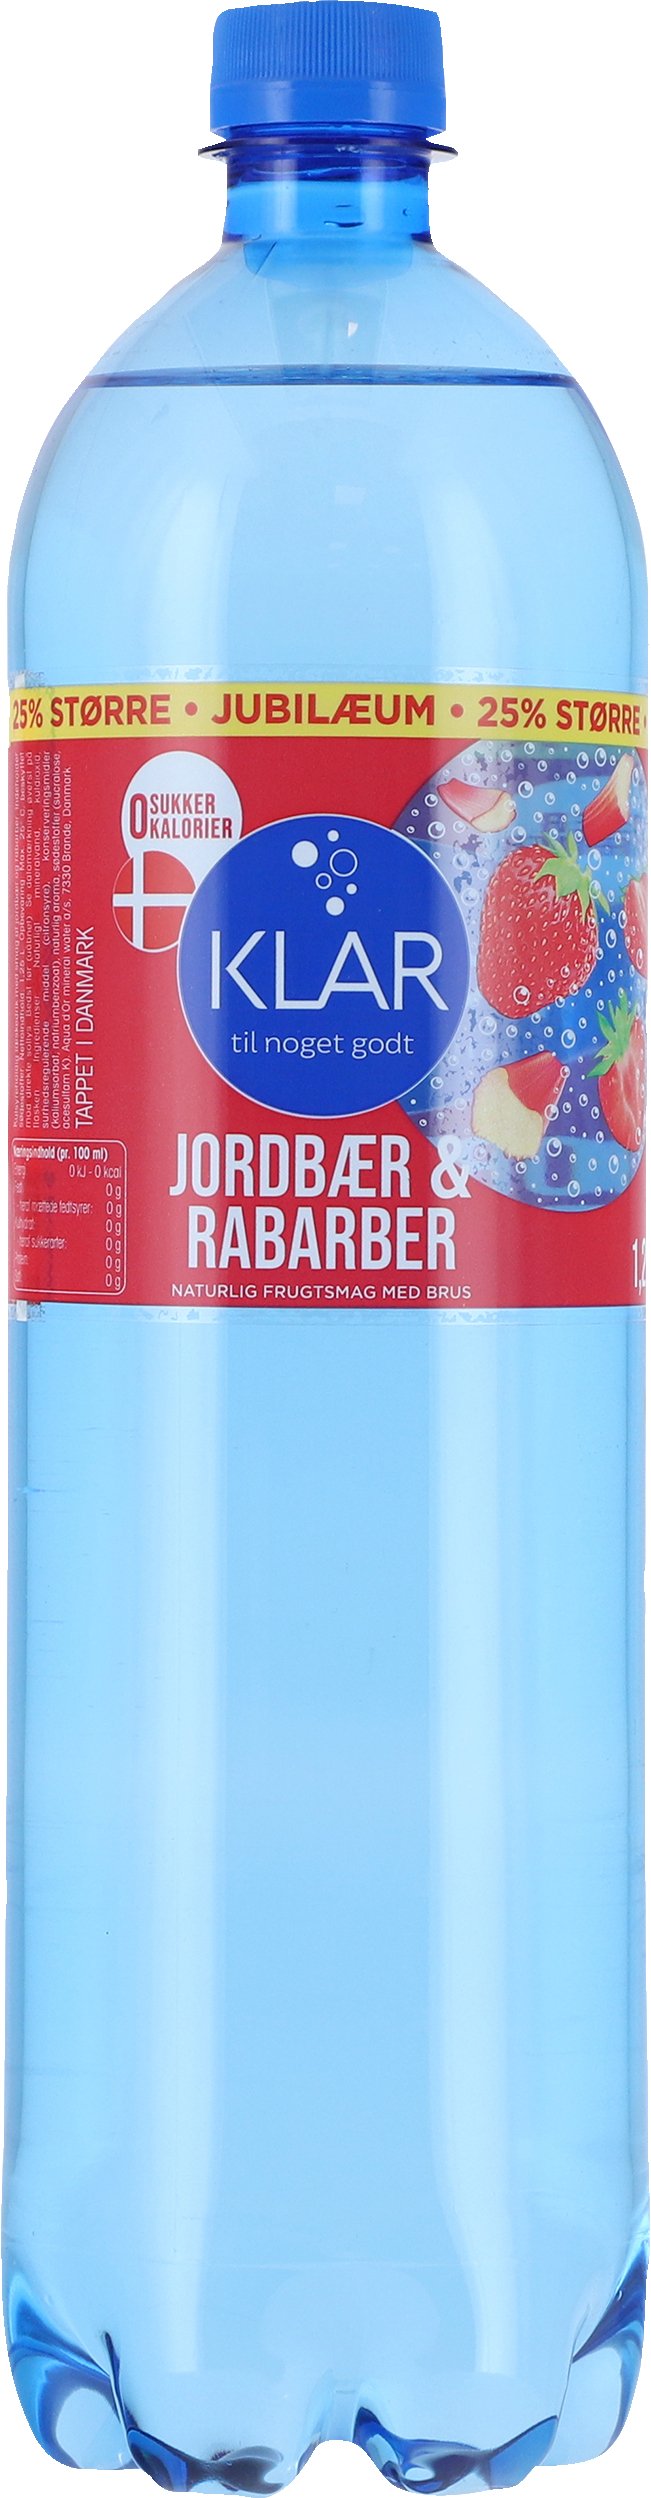 frimærke Woods jøde Aqua d'Or Klar Jordbær & Rabarber 125 cl. - SODAVAND, SAFT & VAND - VIN MED  MERE .DK